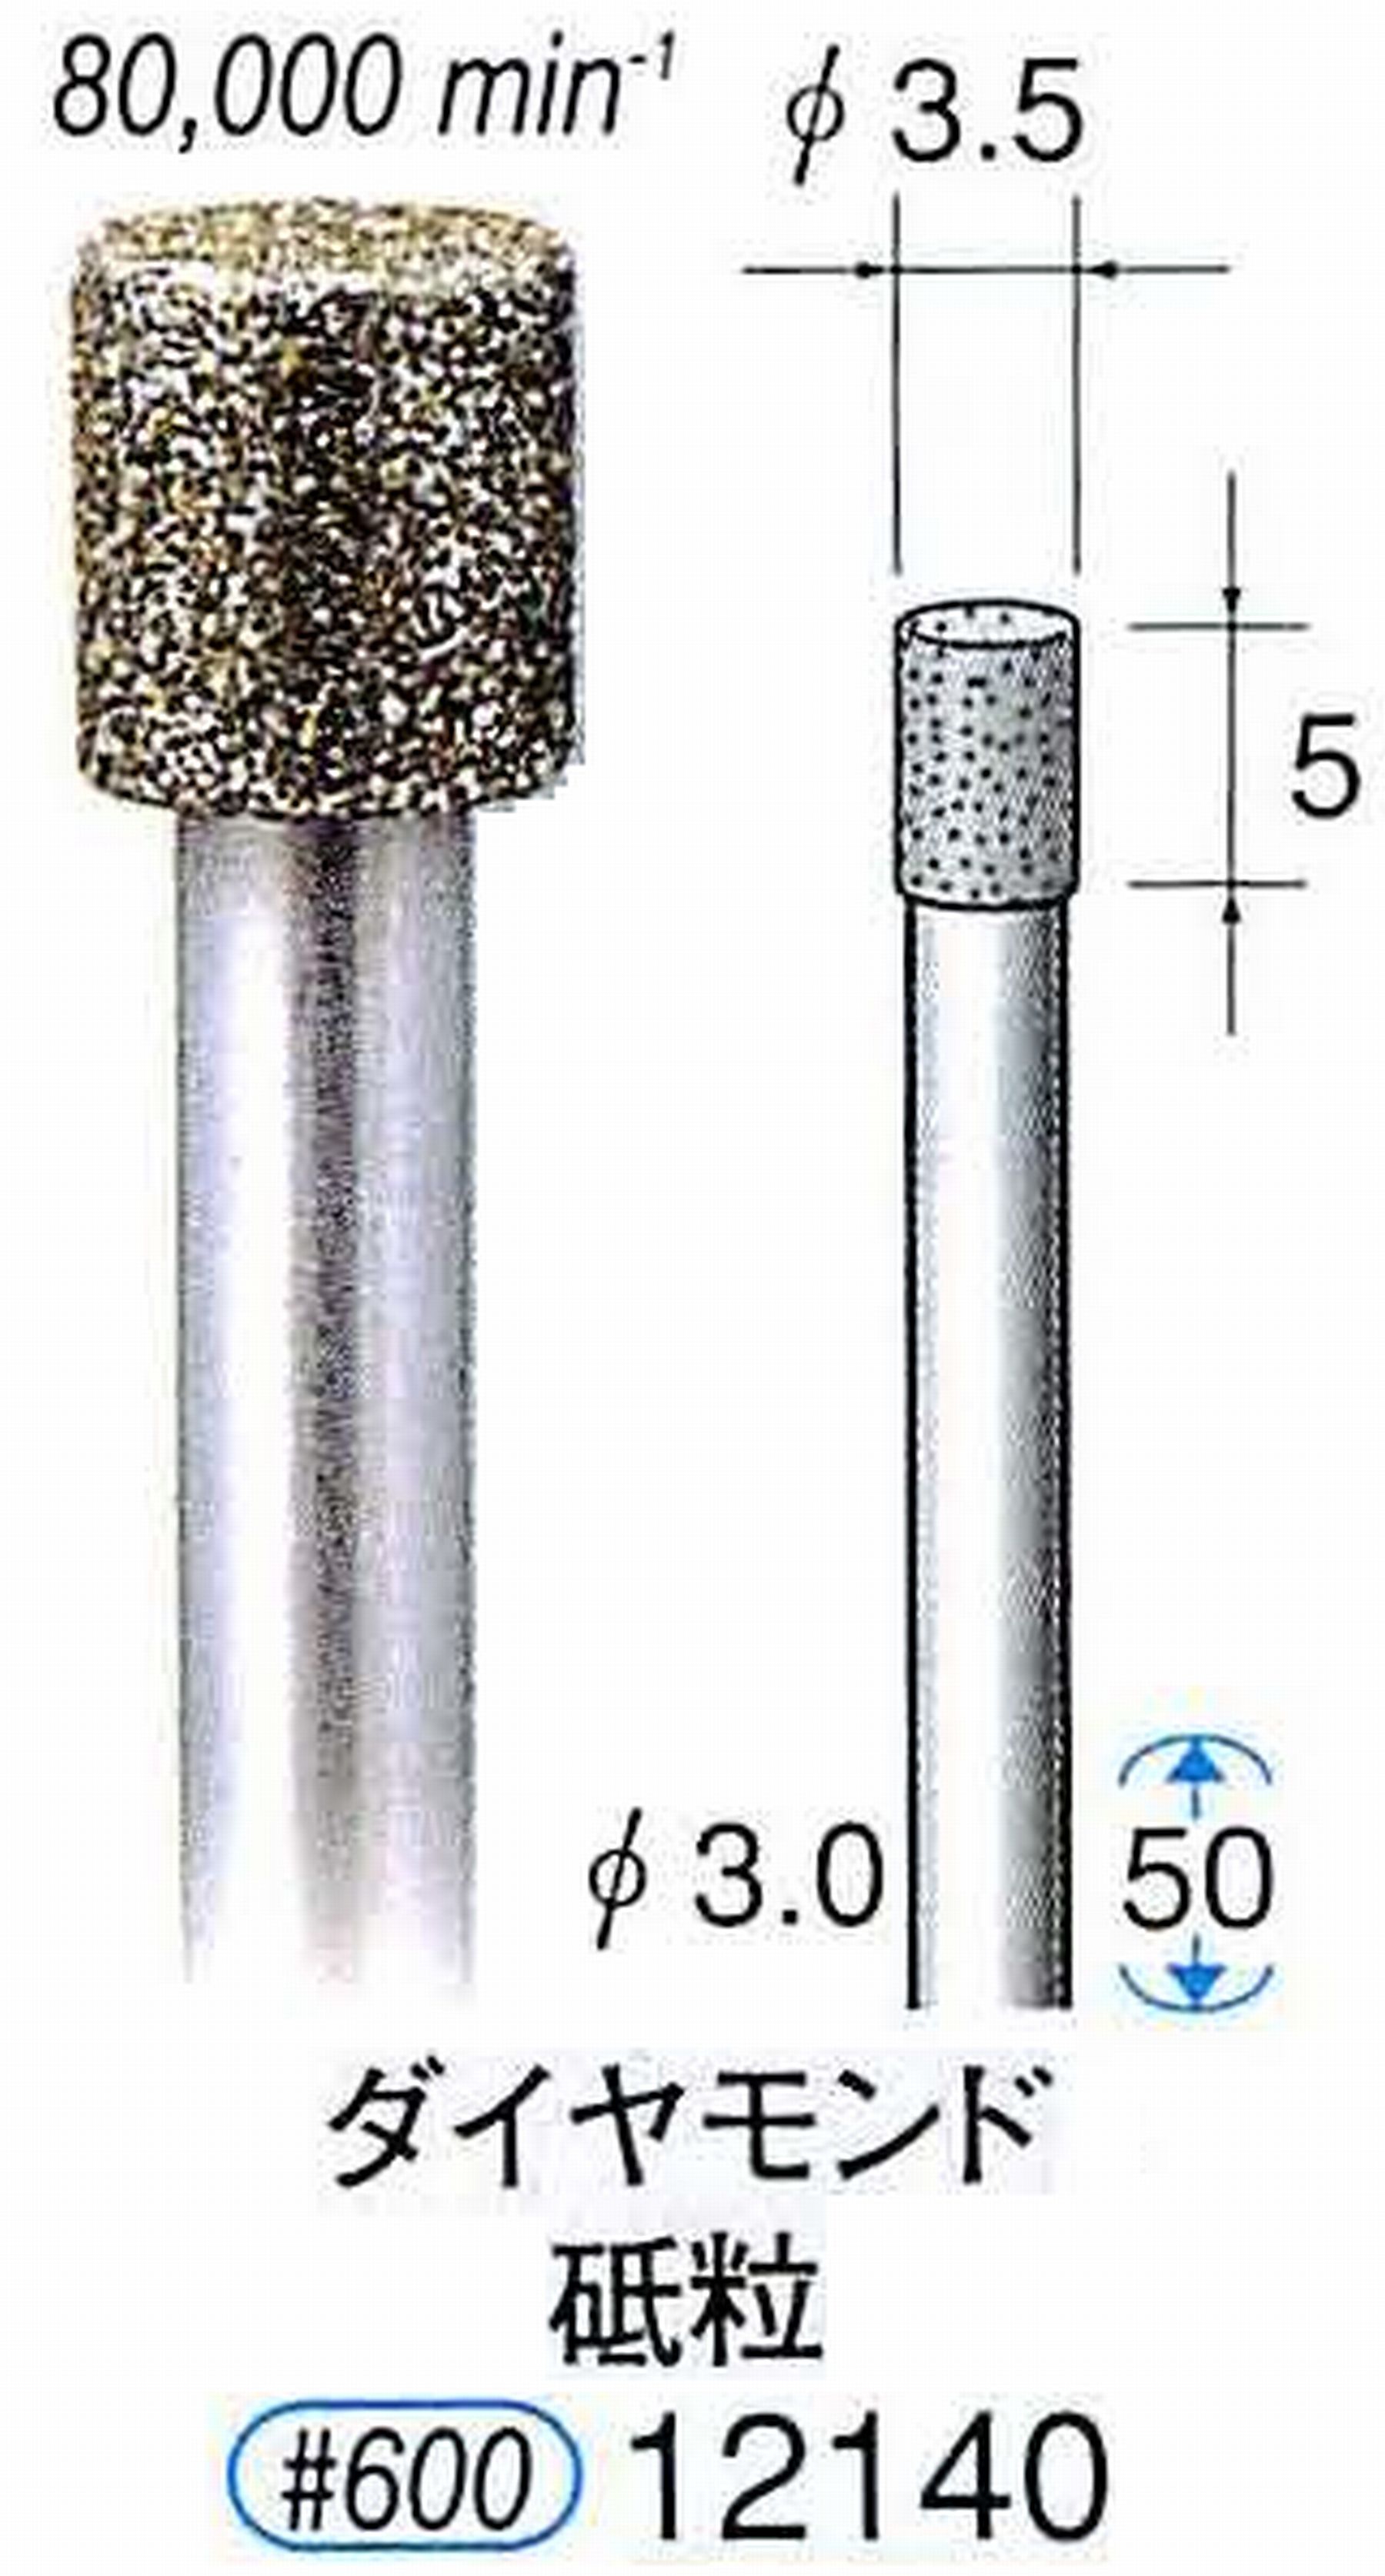 ナカニシ/NAKANISHI 電着ダイヤモンド ダイヤモンド砥粒 軸径(シャンク)φ3.0mm 12140